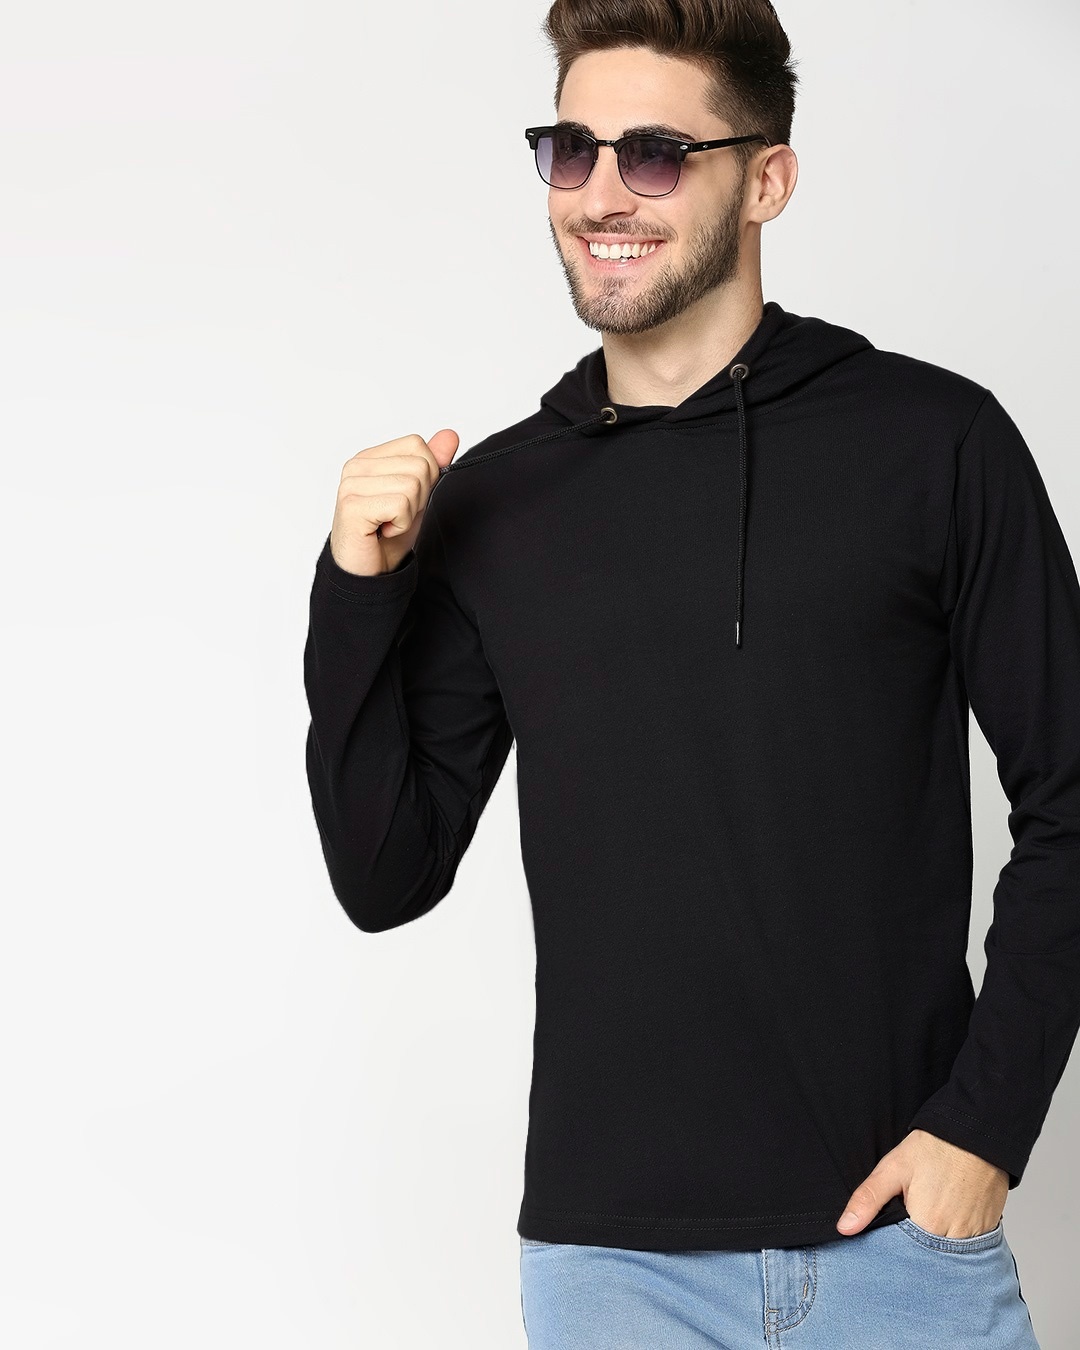 Buy Black Full Sleeve Hoodie T-Shirt Online at Bewakoof